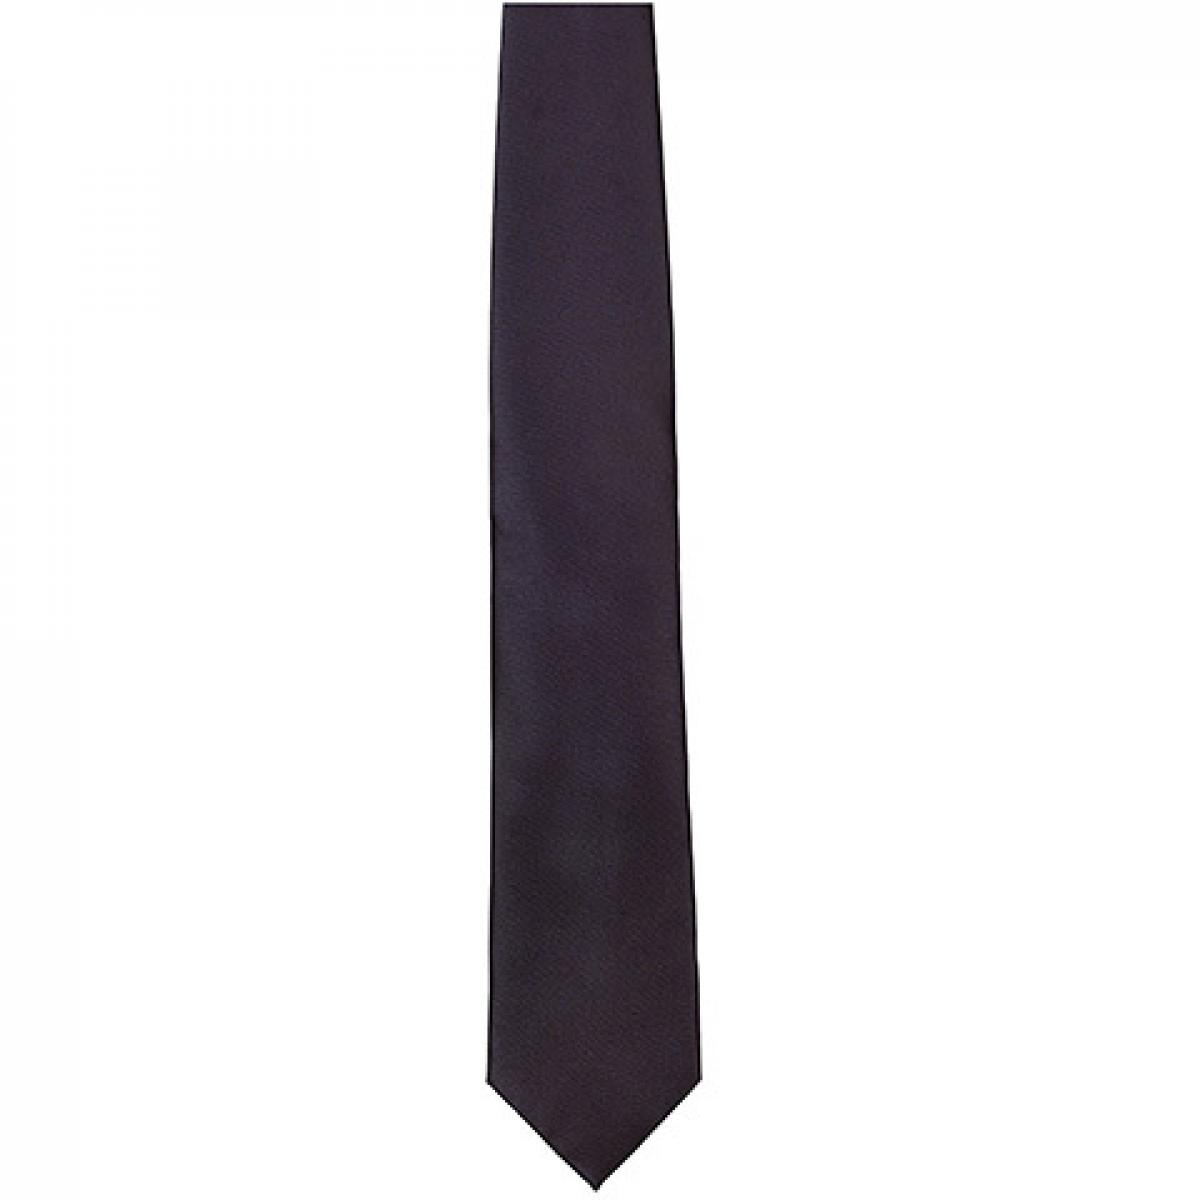 Hersteller: TYTO Herstellernummer: TT901 Artikelbezeichnung: Satin Tie / 144 x 8,5cm /  Zu 100% von Hand genäht Farbe: Black